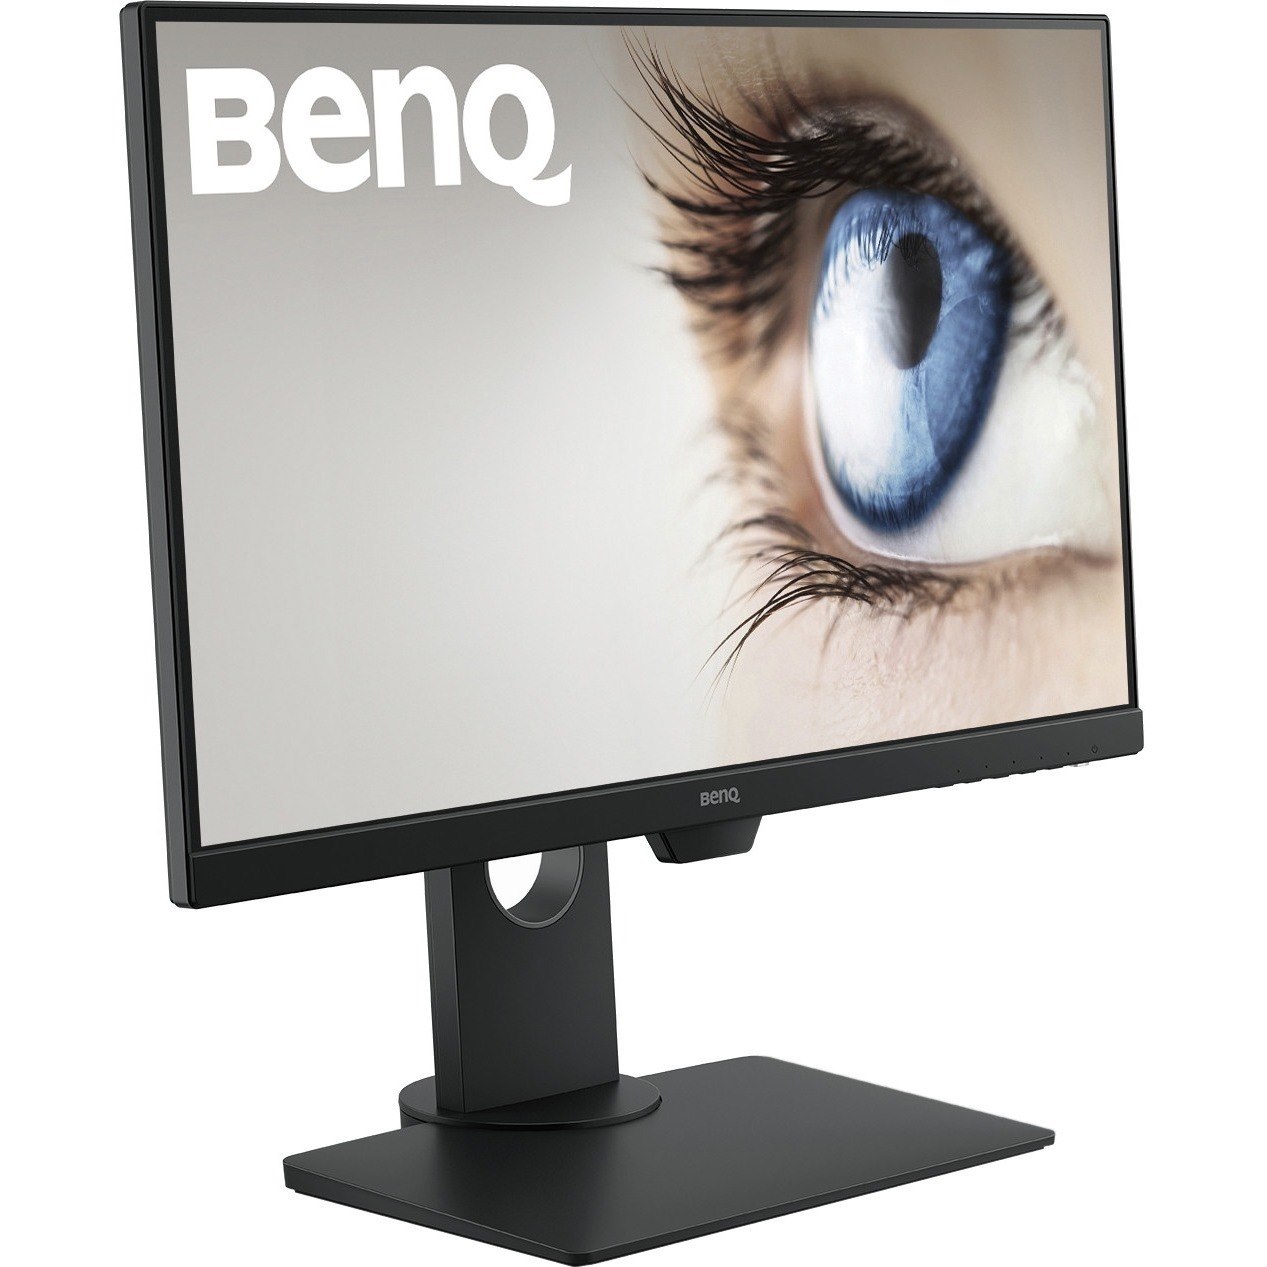 BenQ BL2480T Full HD LCD Monitor - 16:9 - Black